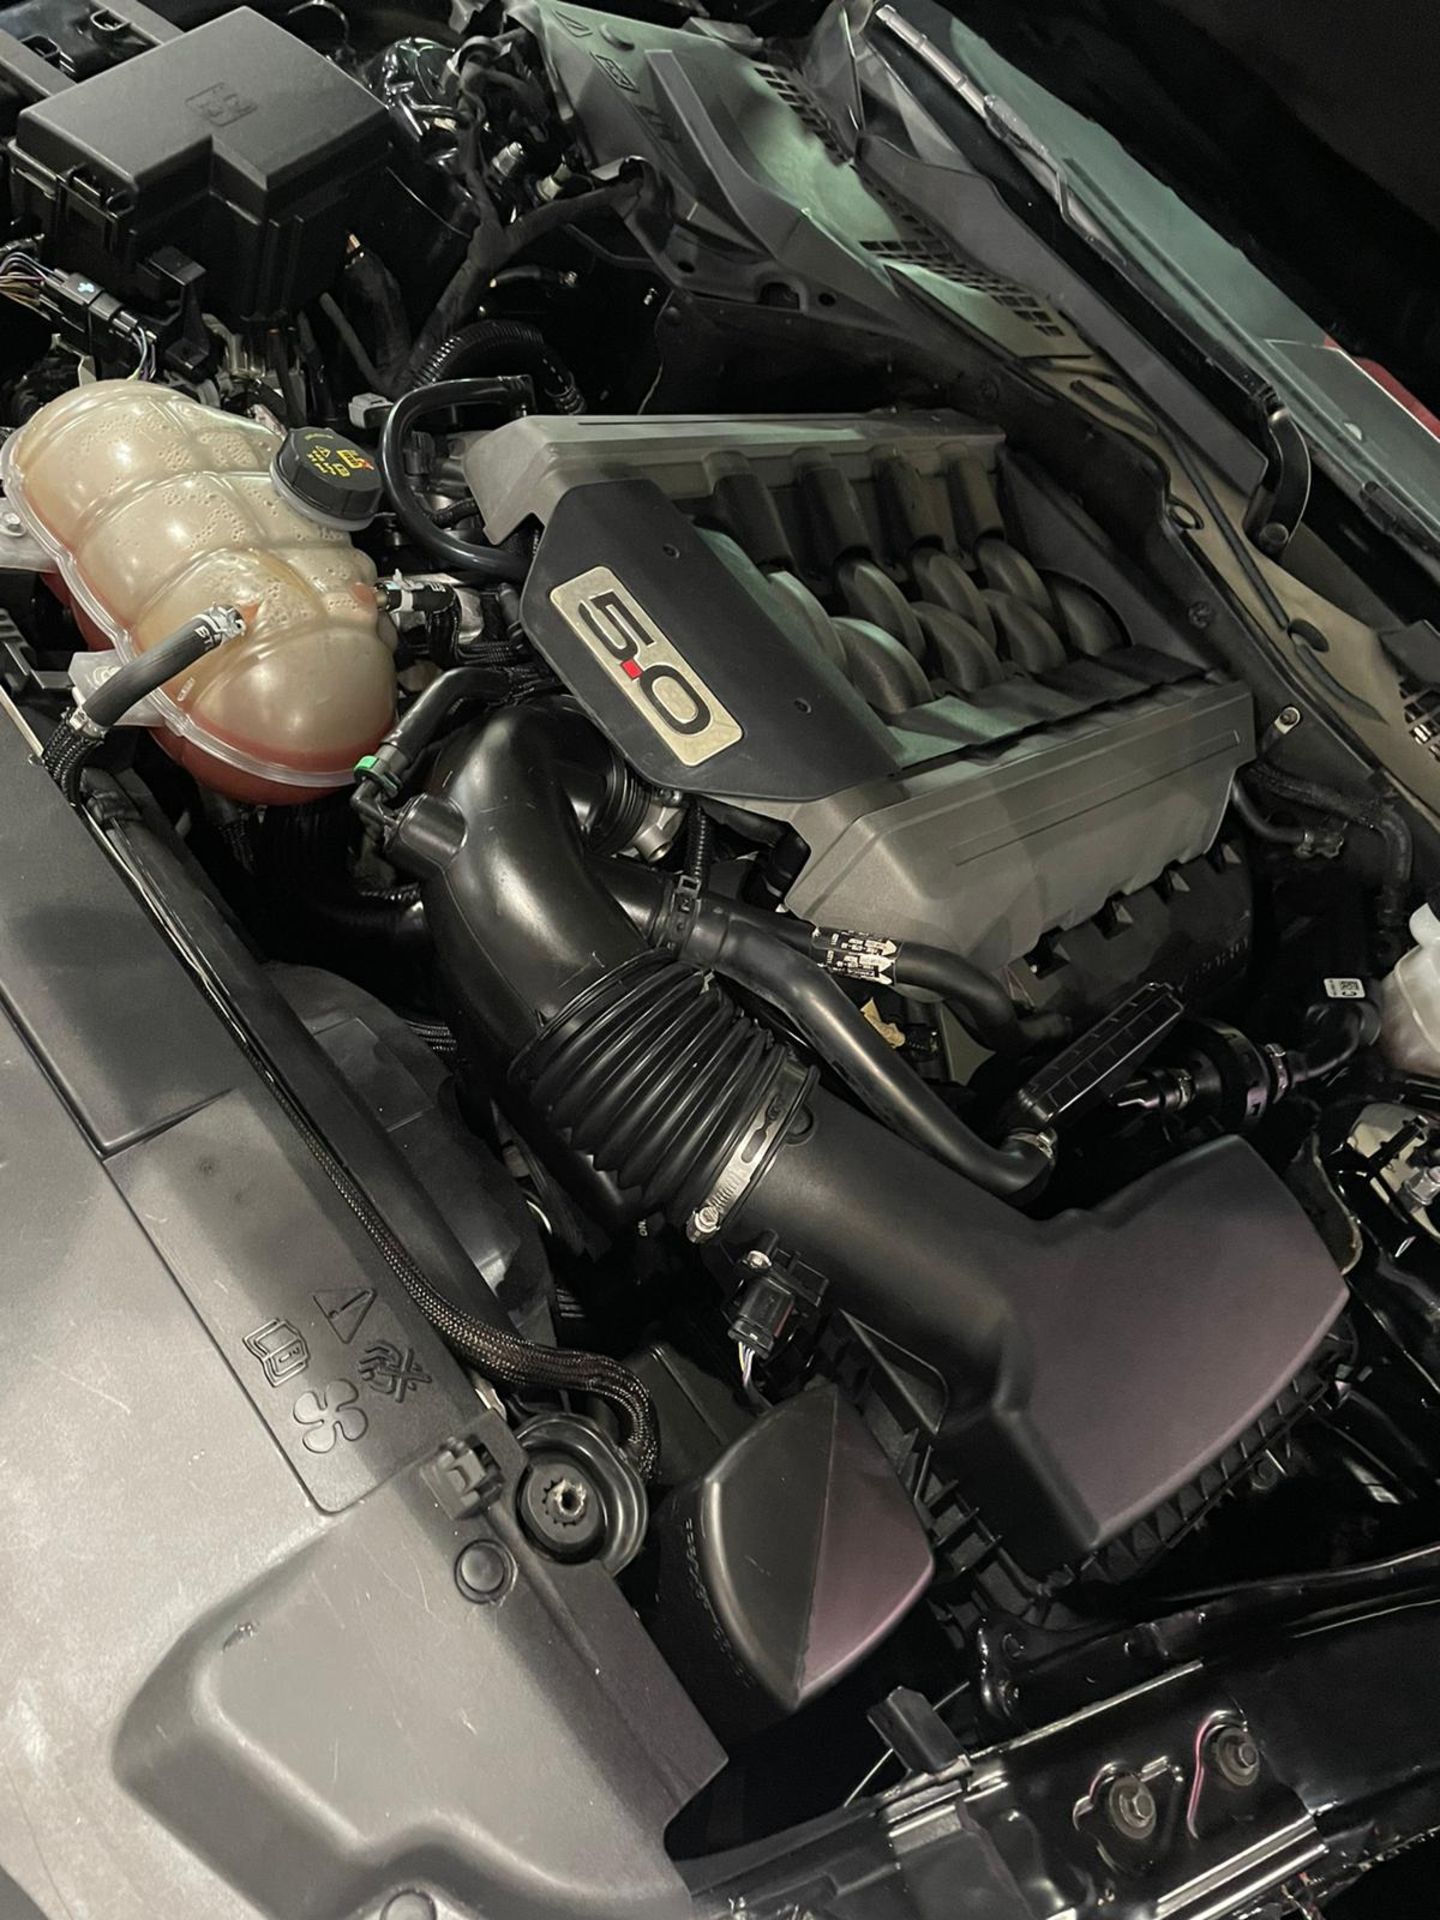 2019 mustang gt 5.0 V8 Shelby body kit 15,000 km. Uk mid APRIL With nova *PLUS VAT* - Image 8 of 9